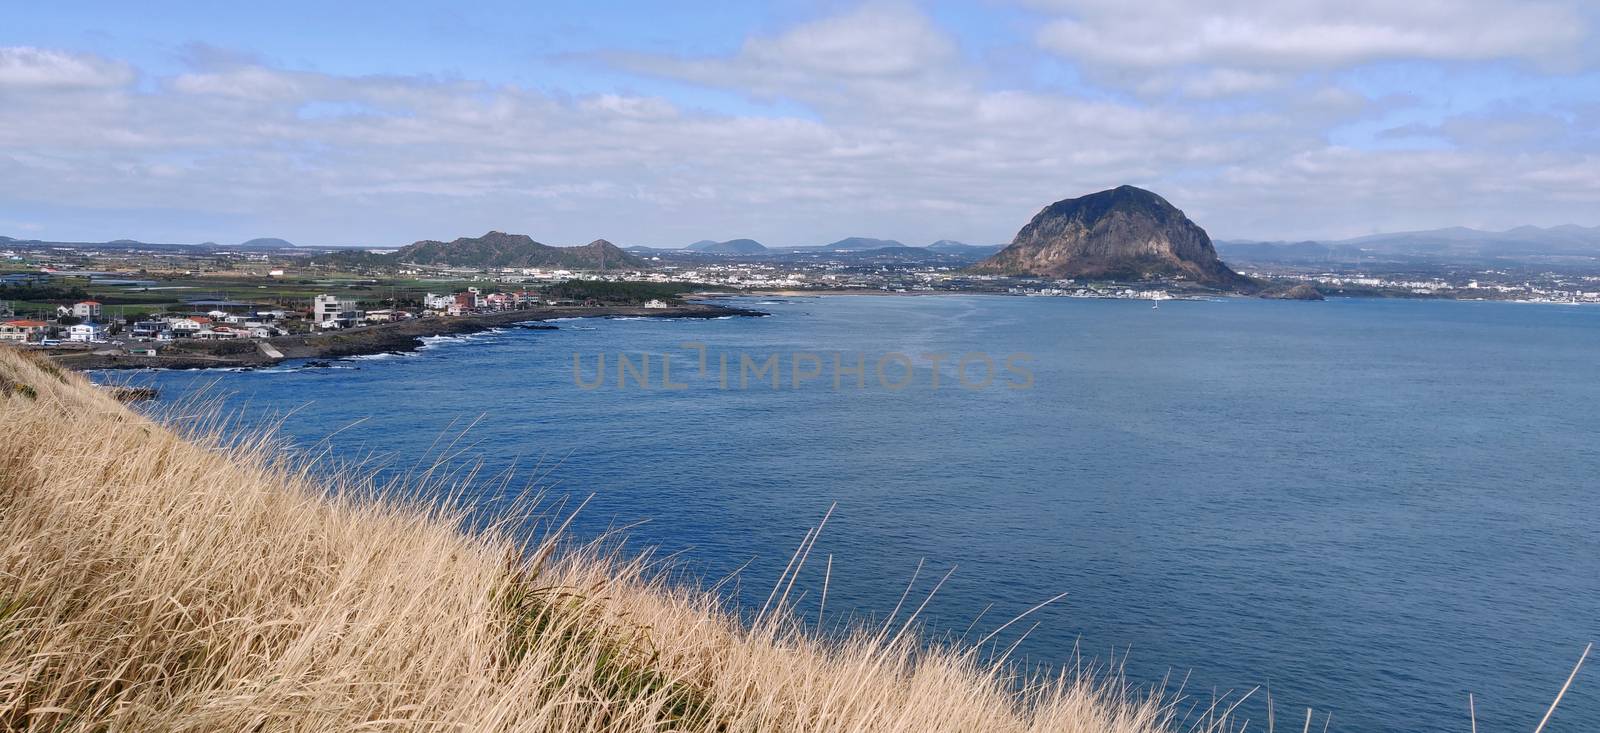 Sanbang-san mountain landscape seen from across ocean in Jeju Island, South Korea